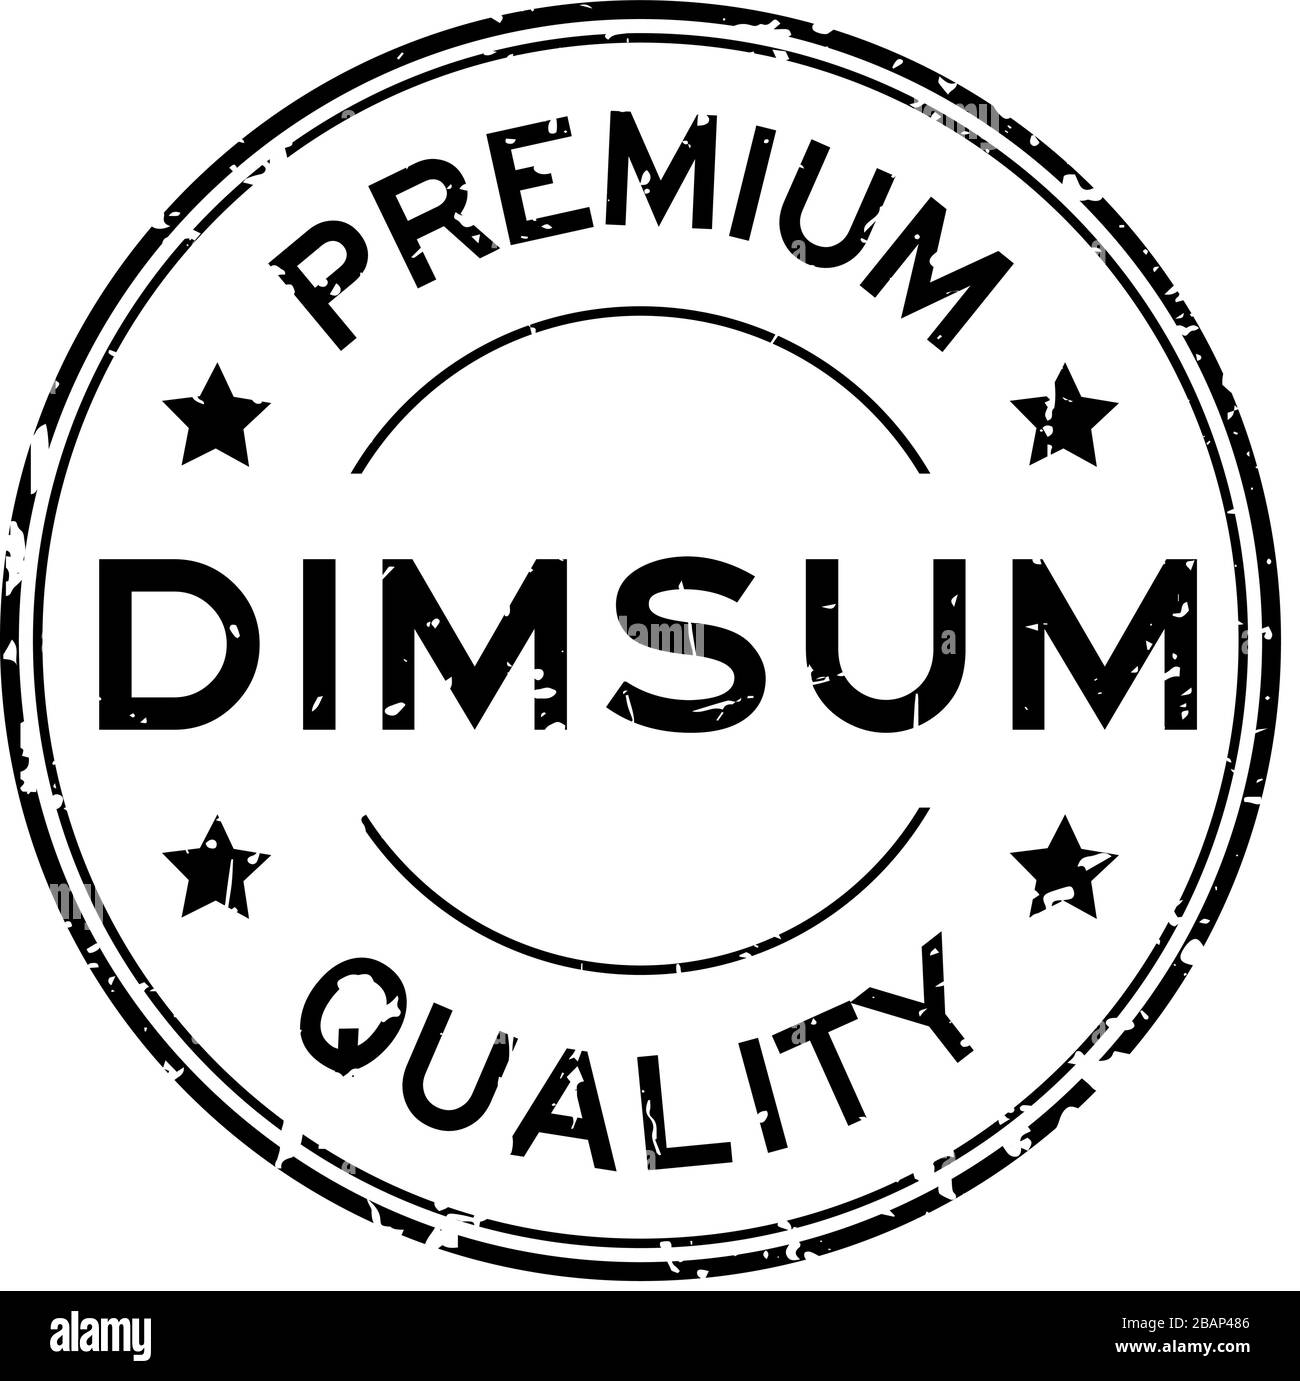 Grunge schwarz Premium Quaity Dimmsum Wort Rundum-Gummidichtung Stempel auf weißem Hintergrund Stock Vektor